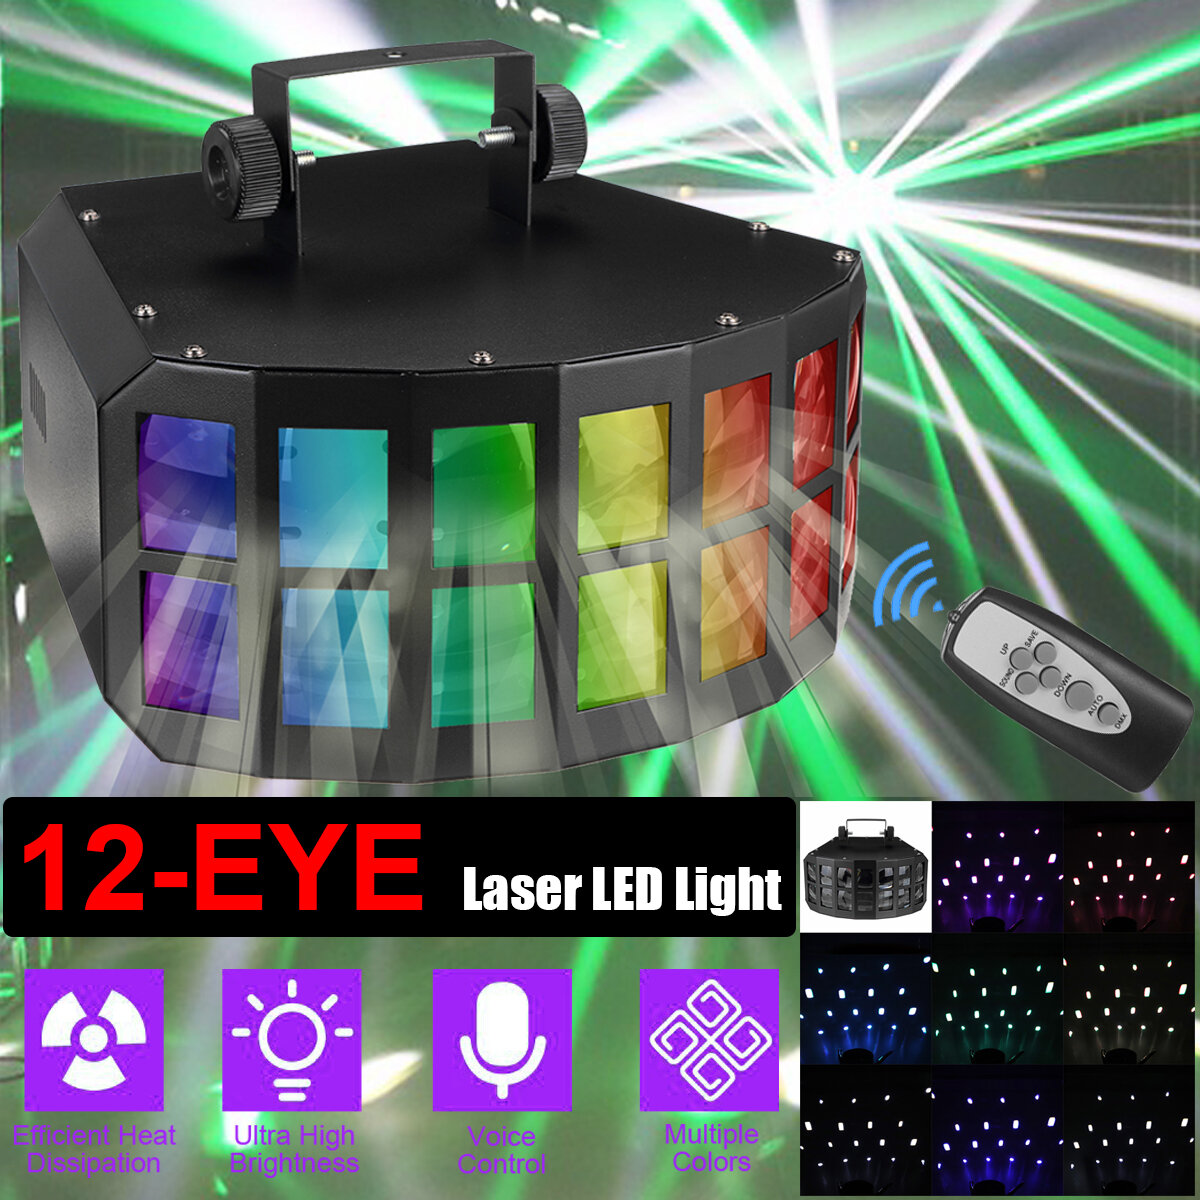 12-EYE RGB DMX Laser Scan Projector LED Stage Light RemoteStrobe Disco DJ Lamp 110-220V